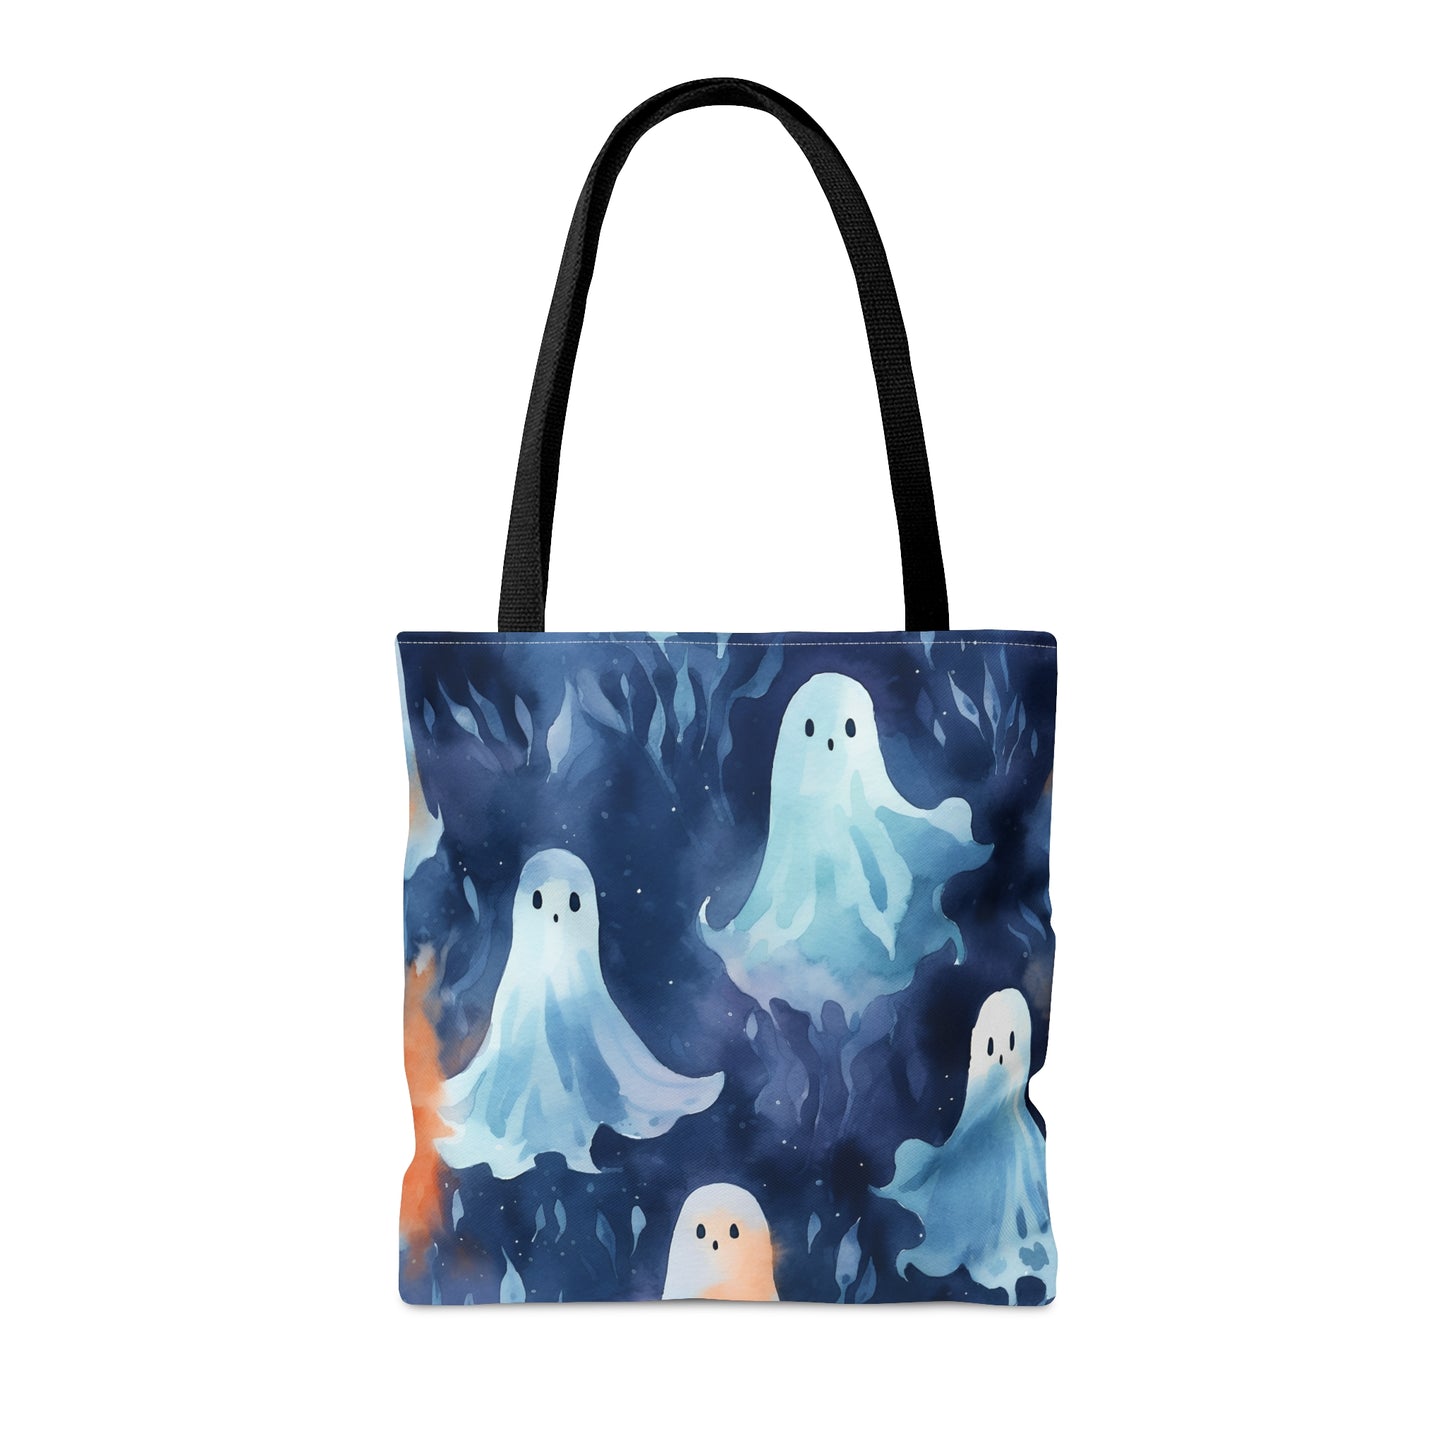 Ghosts Blue Tote Bag (AOP)